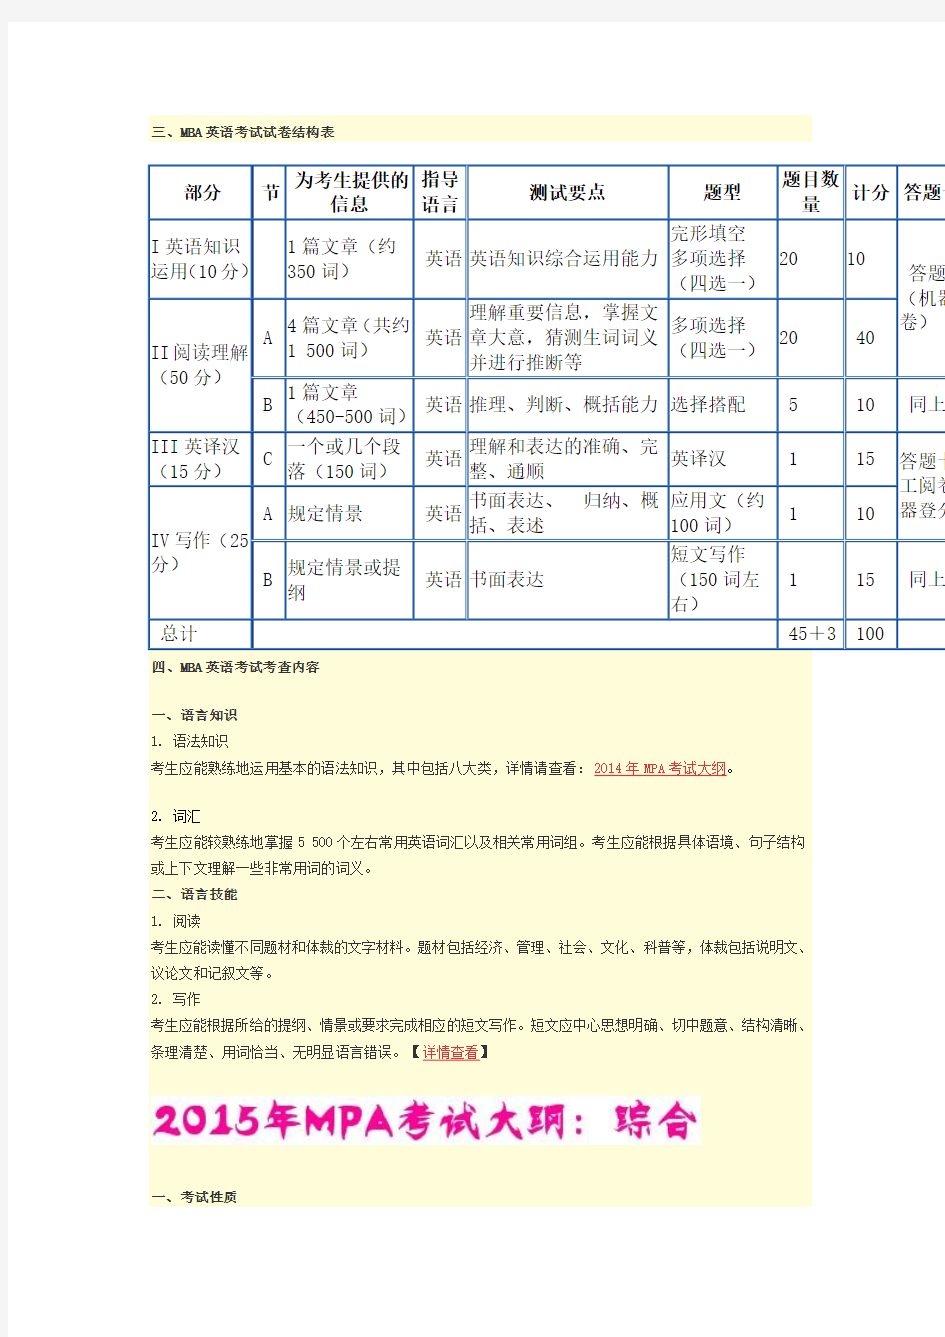 2015一月统考mpa考试大纲(双证)